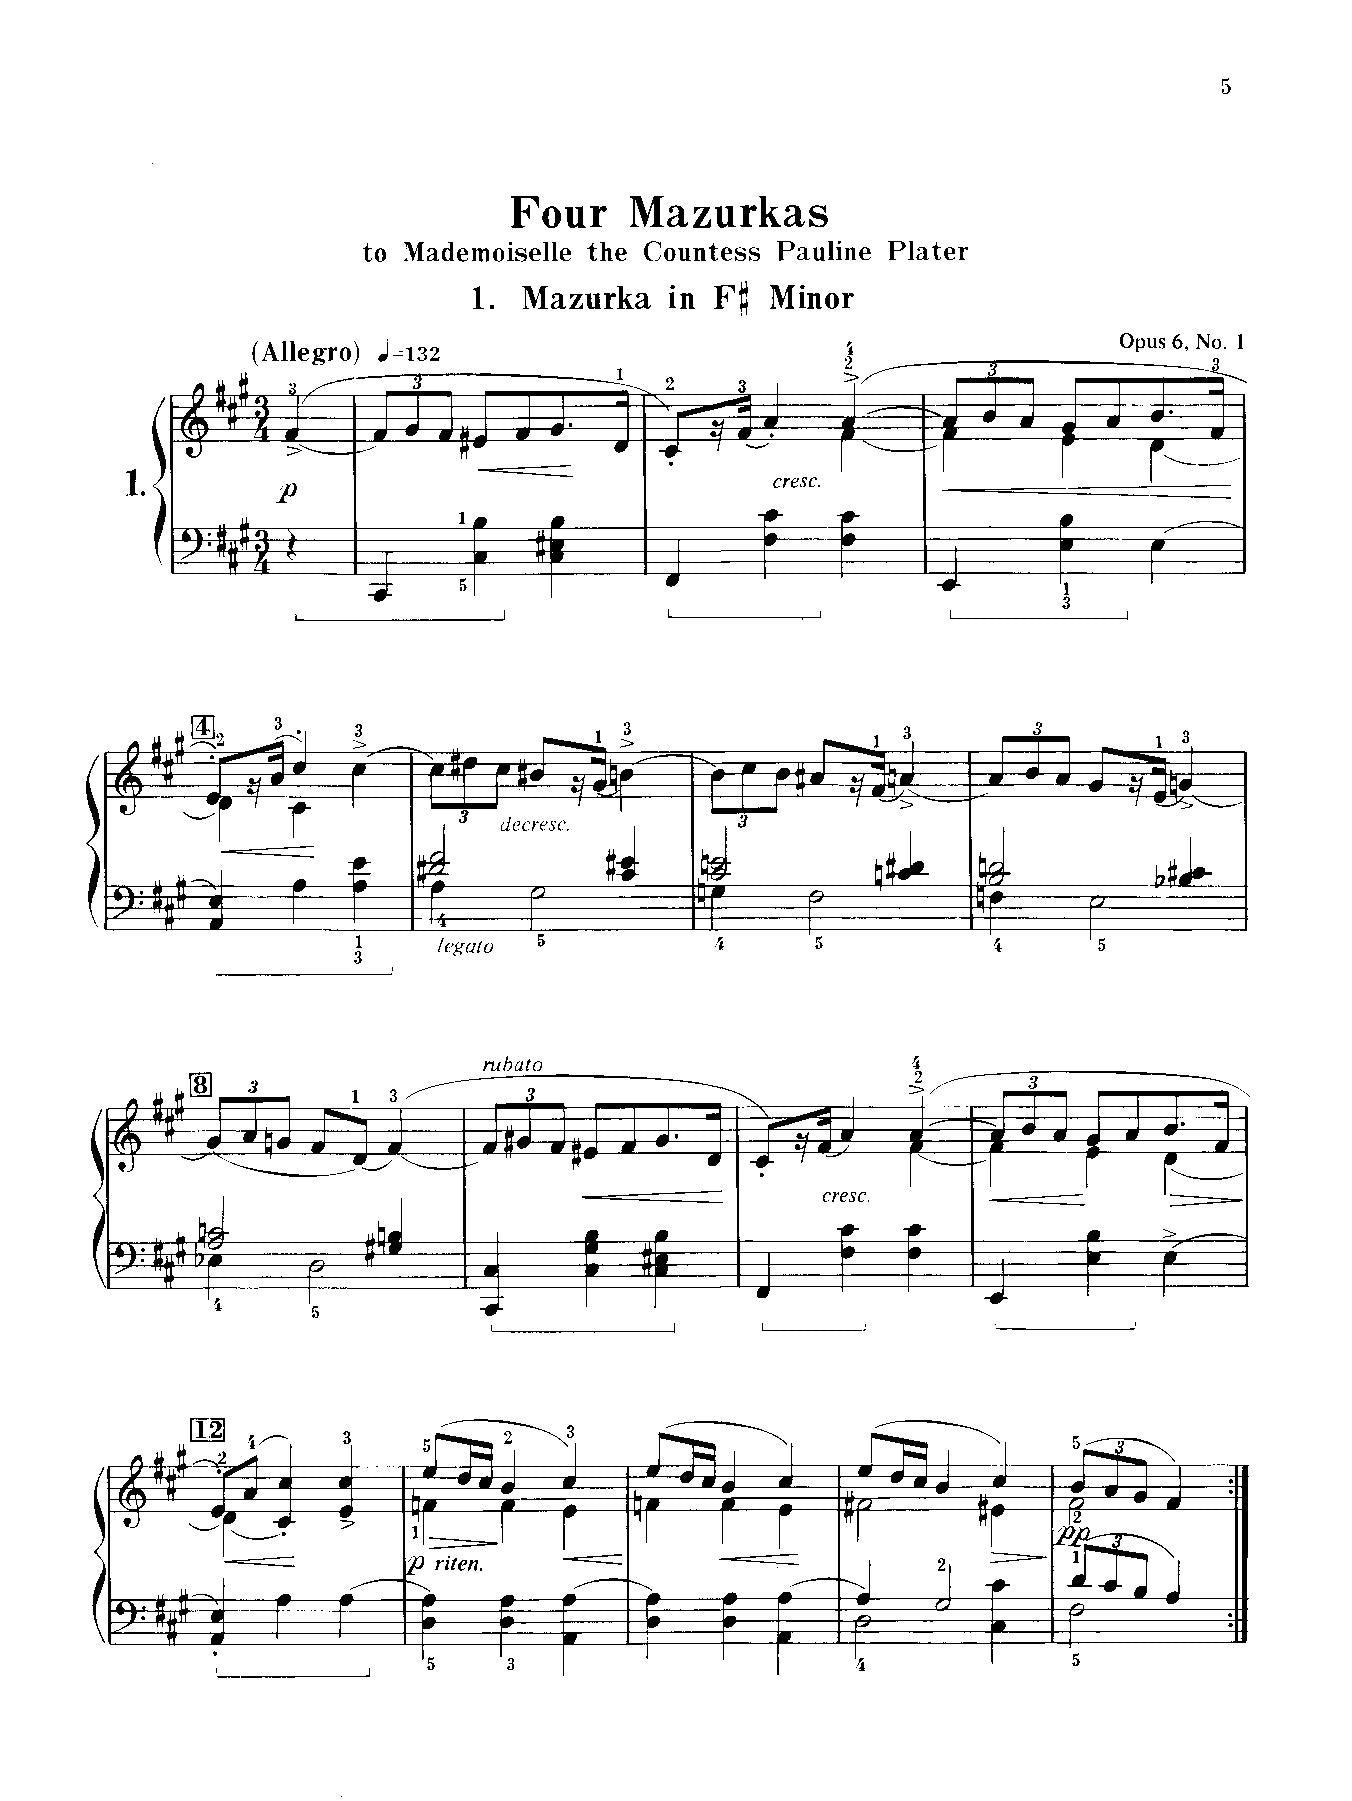 Chopin: Mazurkas (Complete)